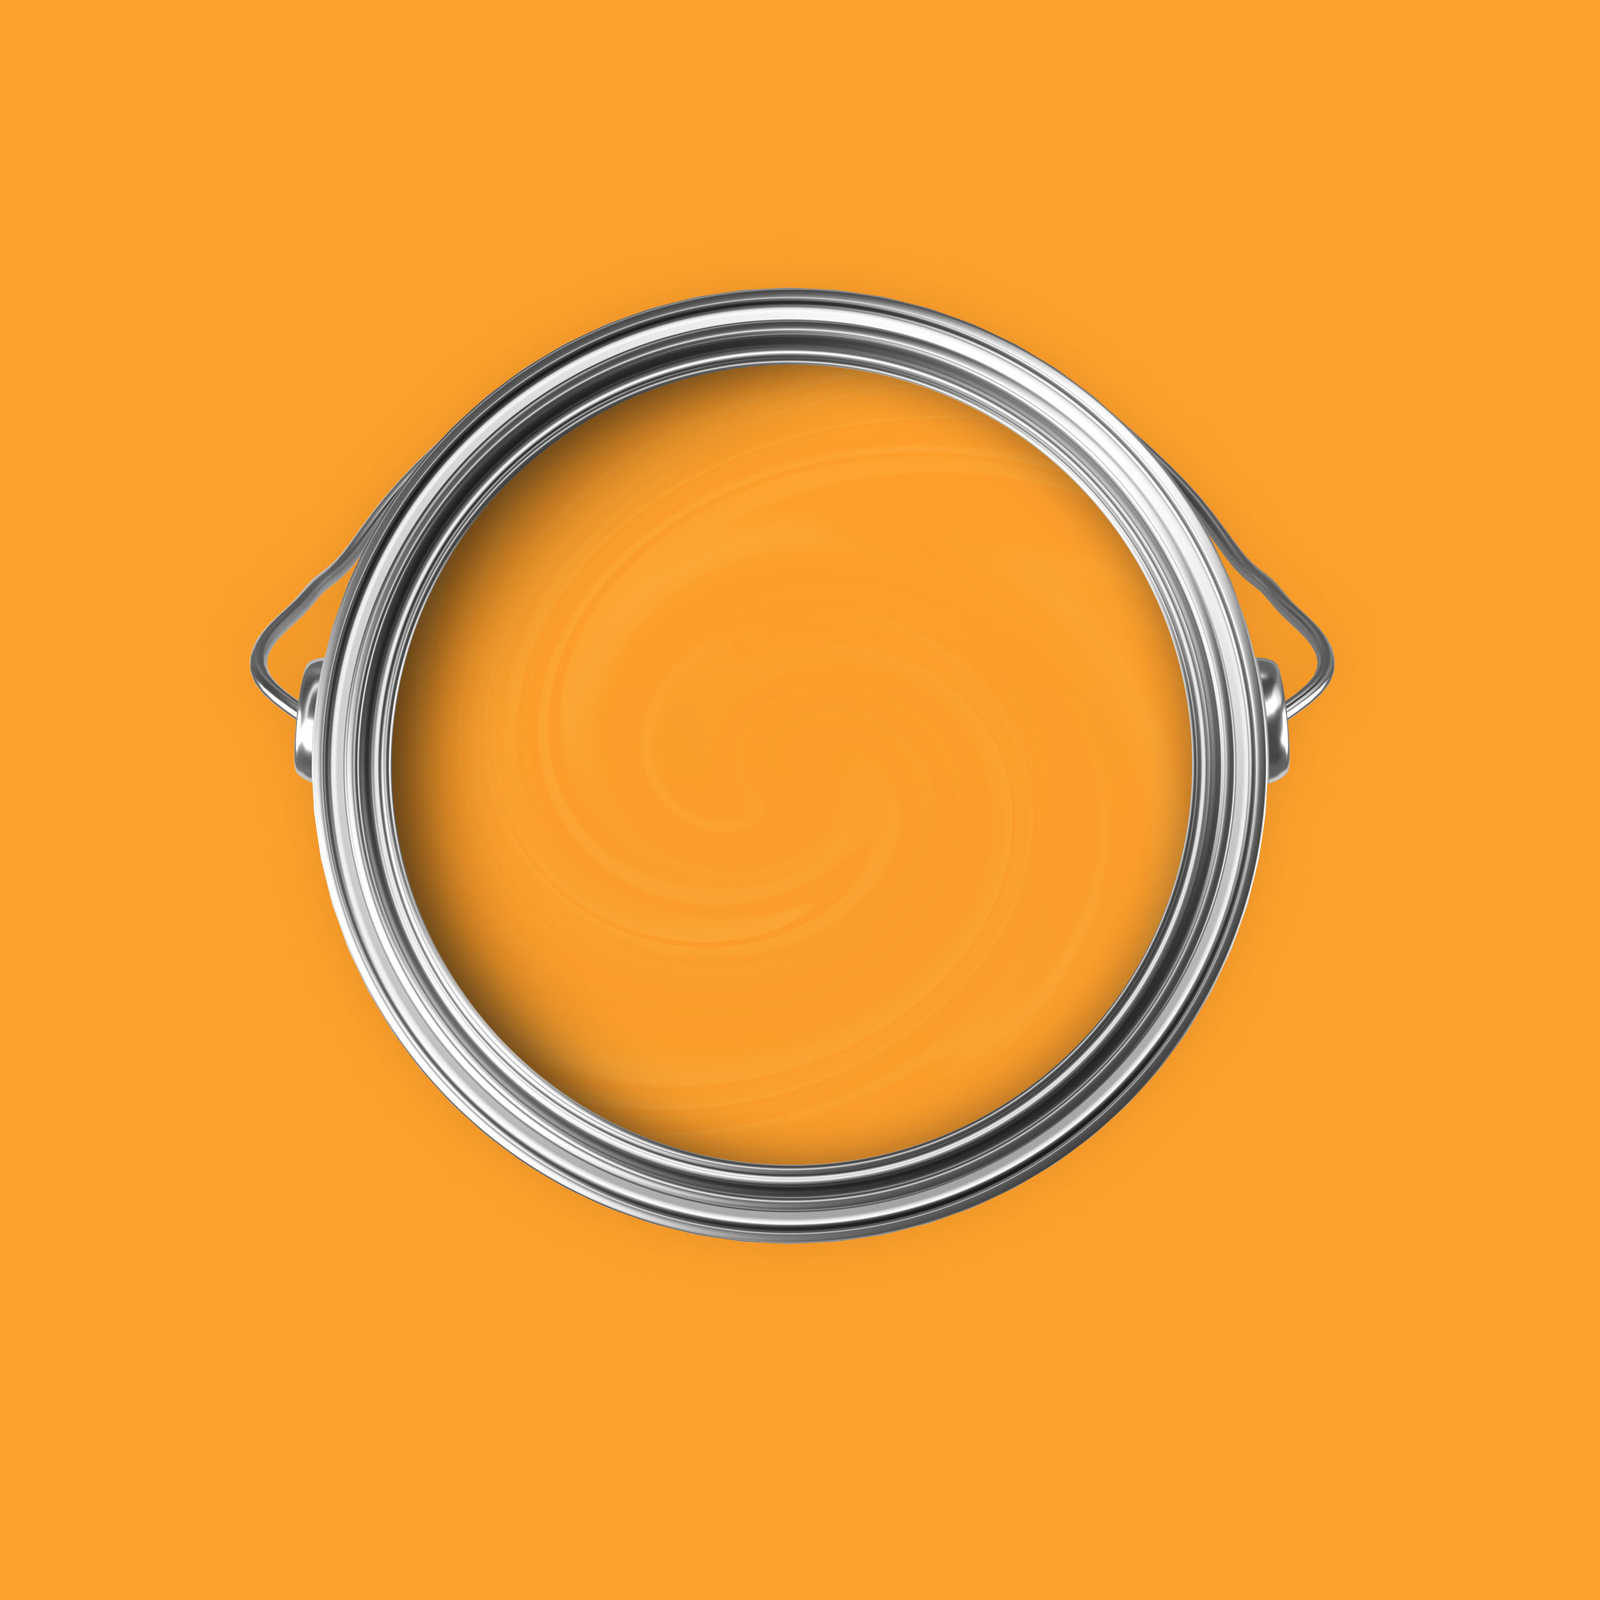             Premium Wall Paint Cheerful Honey Yellow »Juicy Yellow« NW807 – 5 litre
        